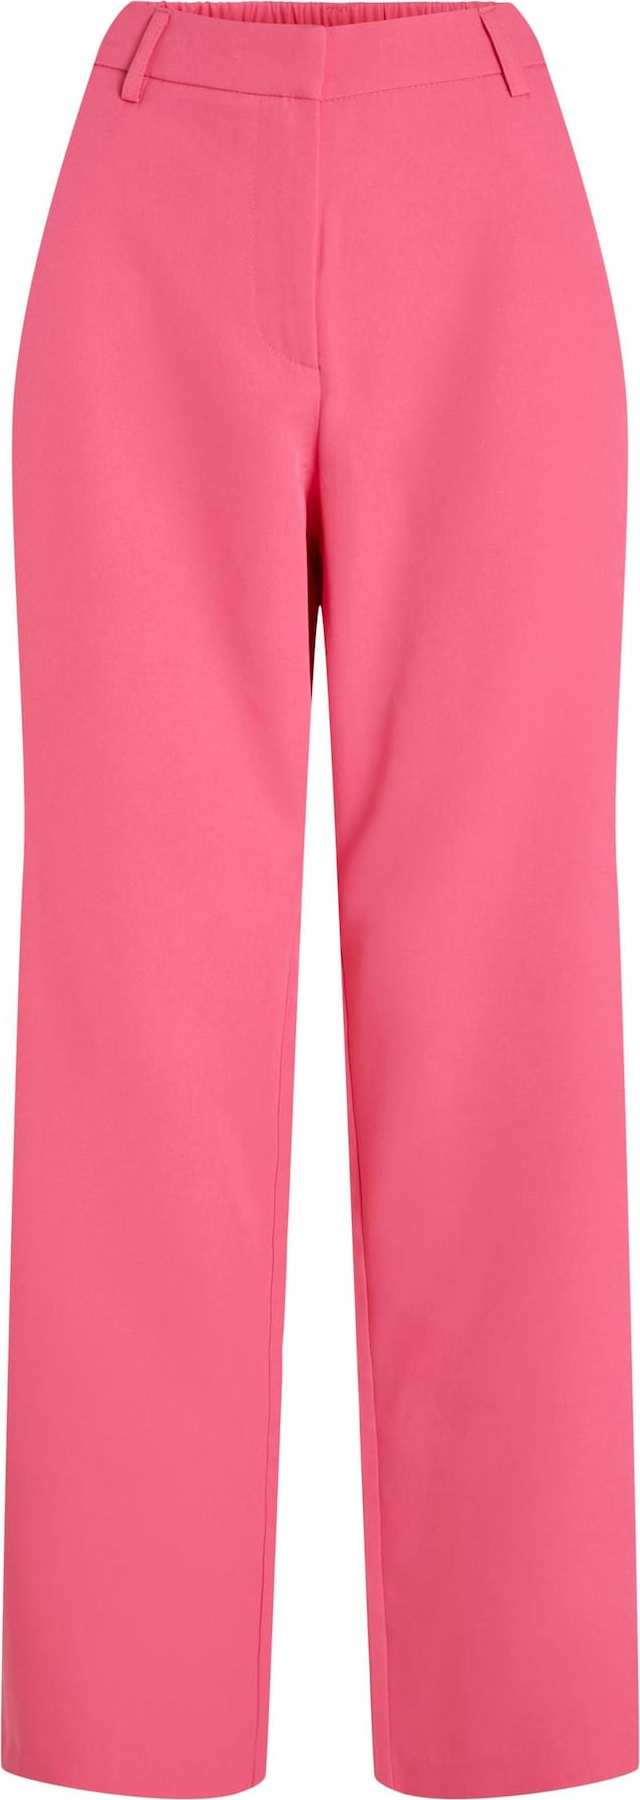 VILA Kalhoty 'Kammas' pink